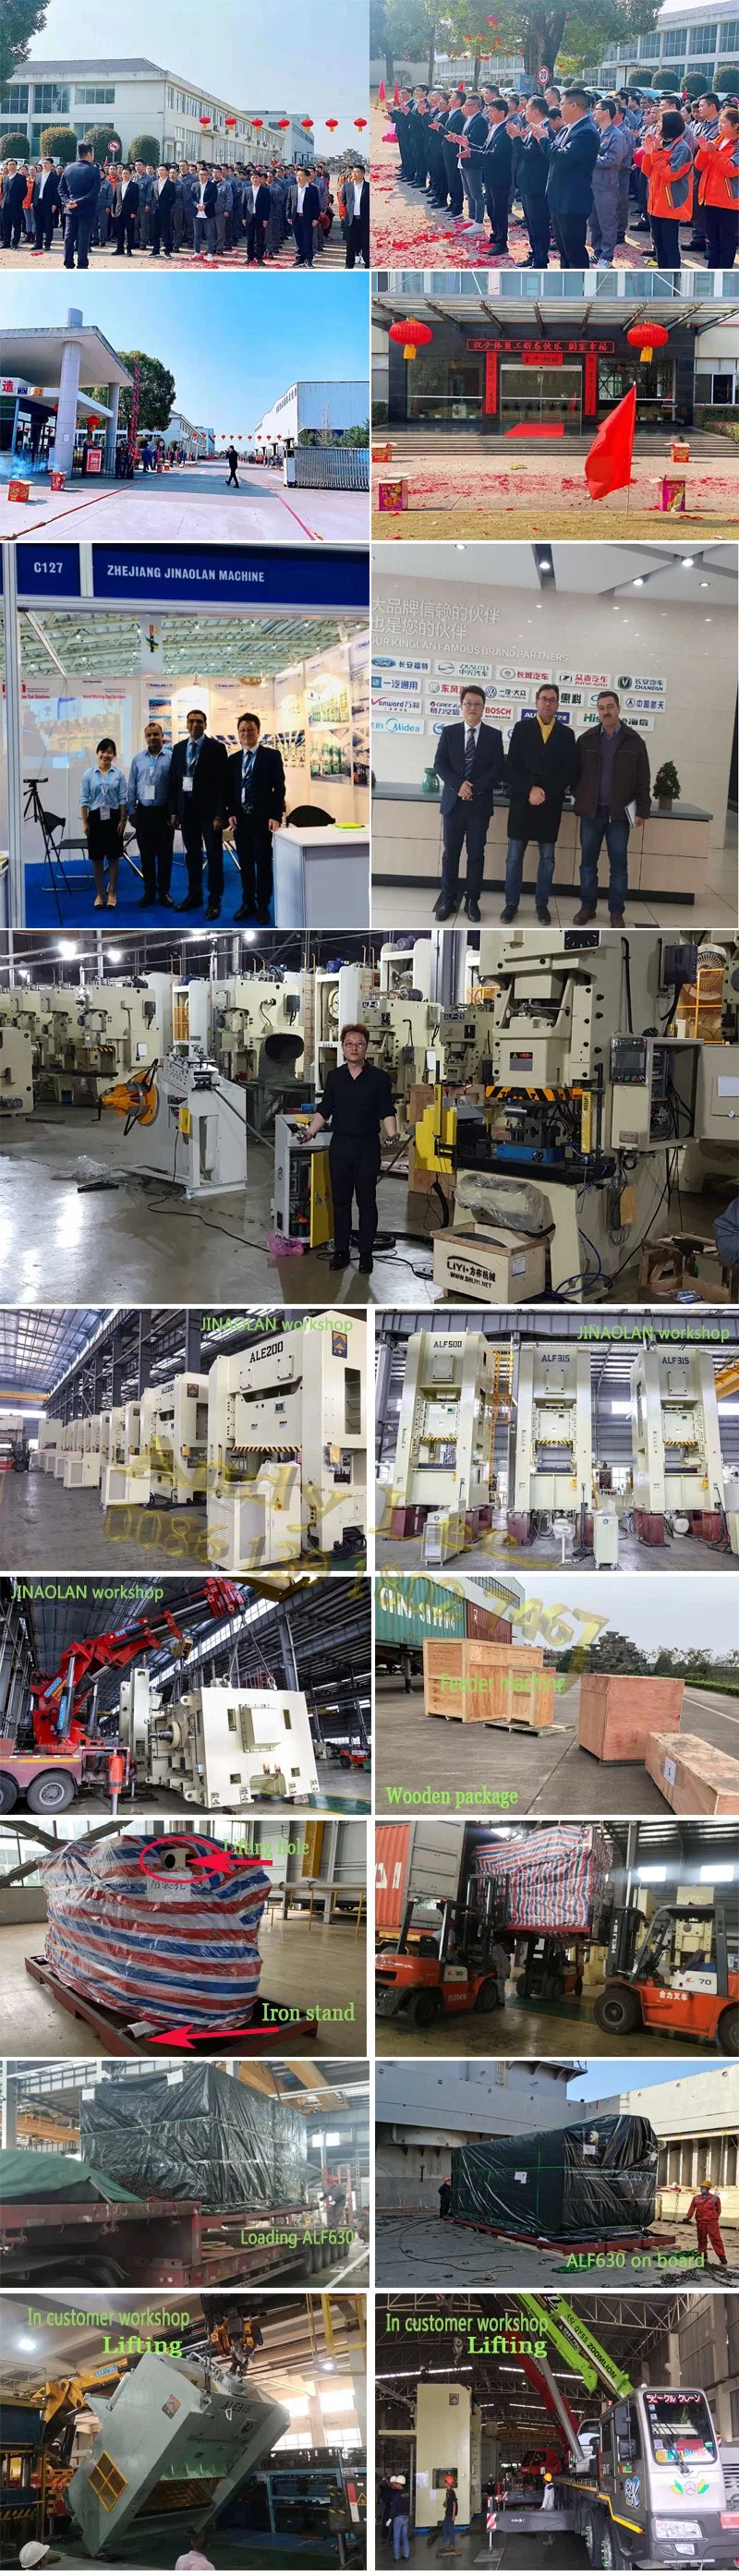 Turkey Project Factory Uncoiler Straightener 2 in 1 Machine and Feeder Machine for Progressive Die